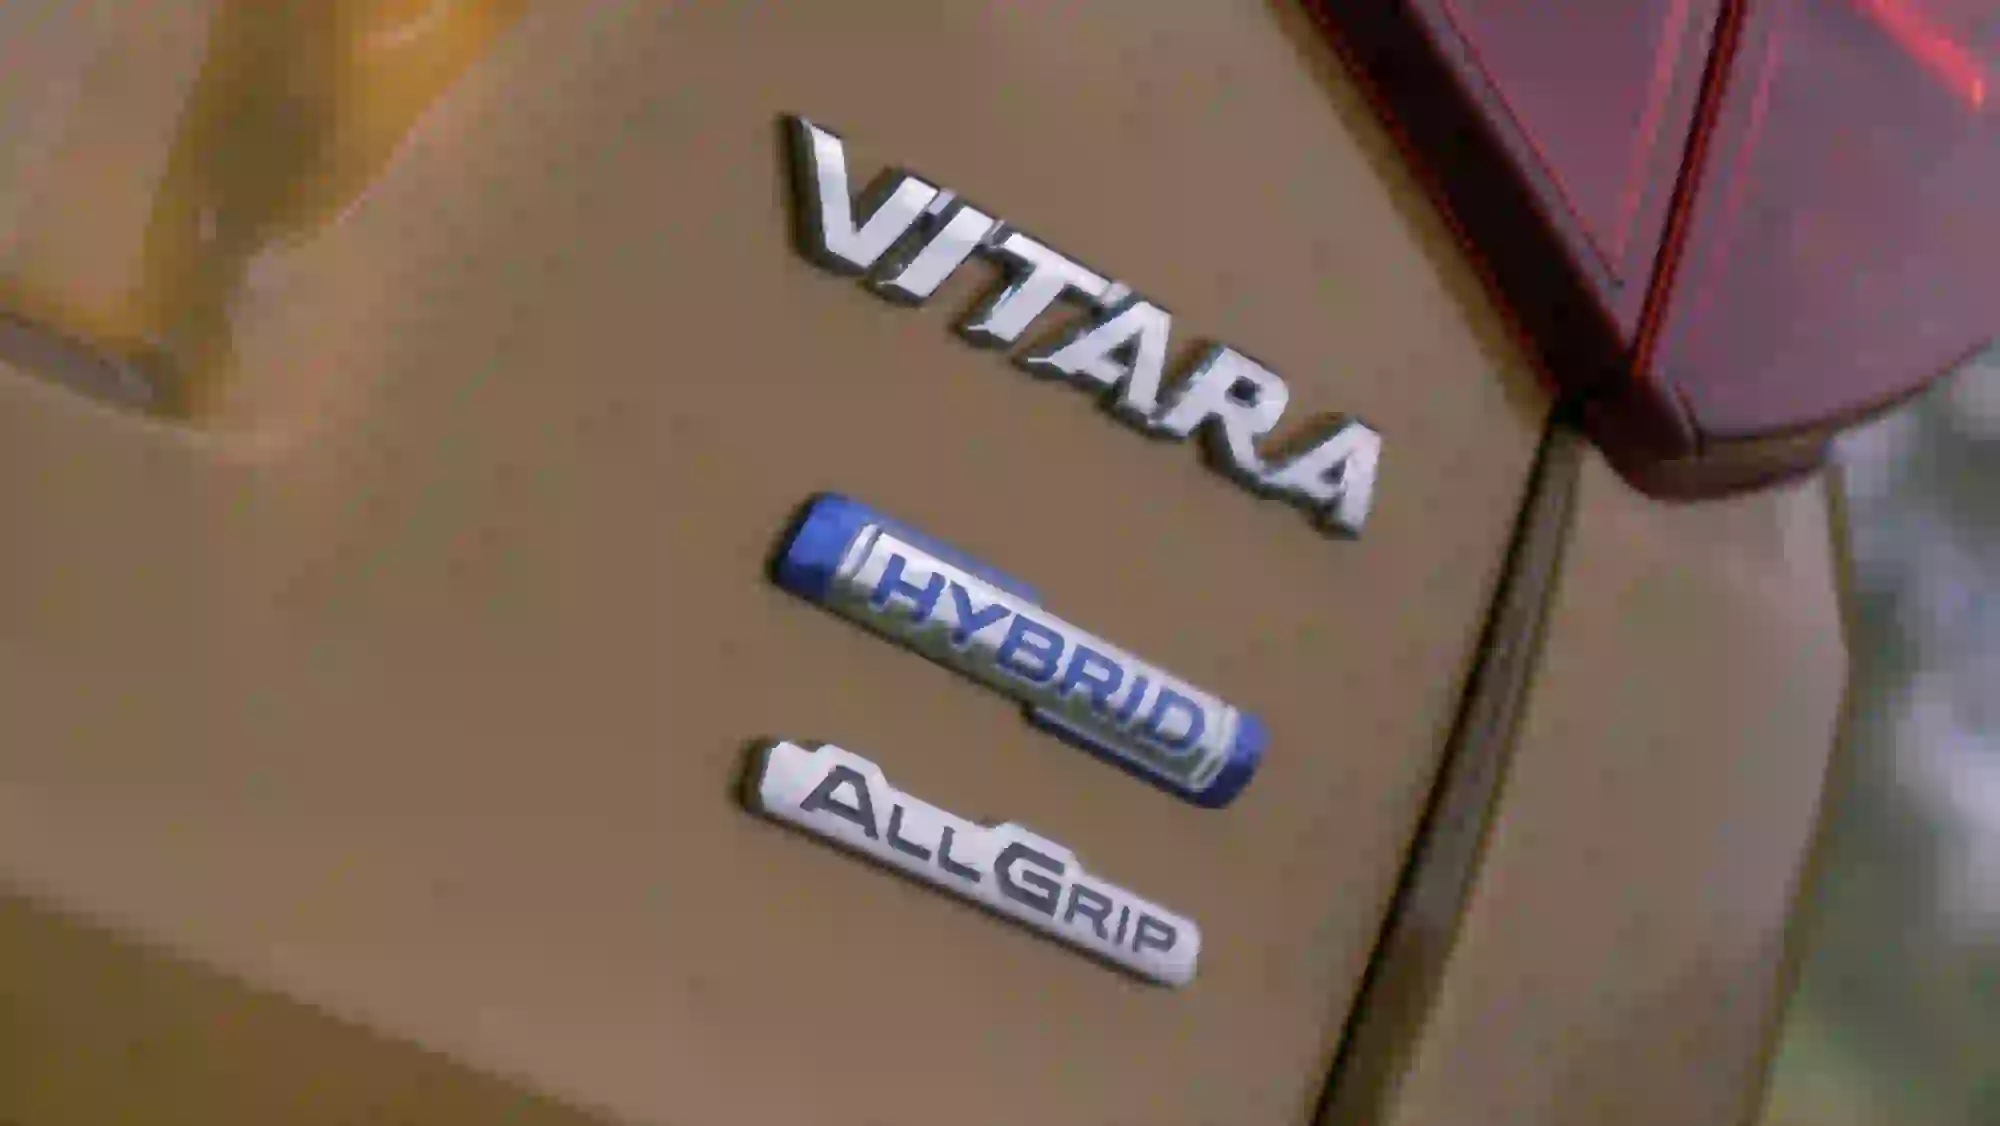 Suzuki Vitara Hybrid - Come Va  - 15